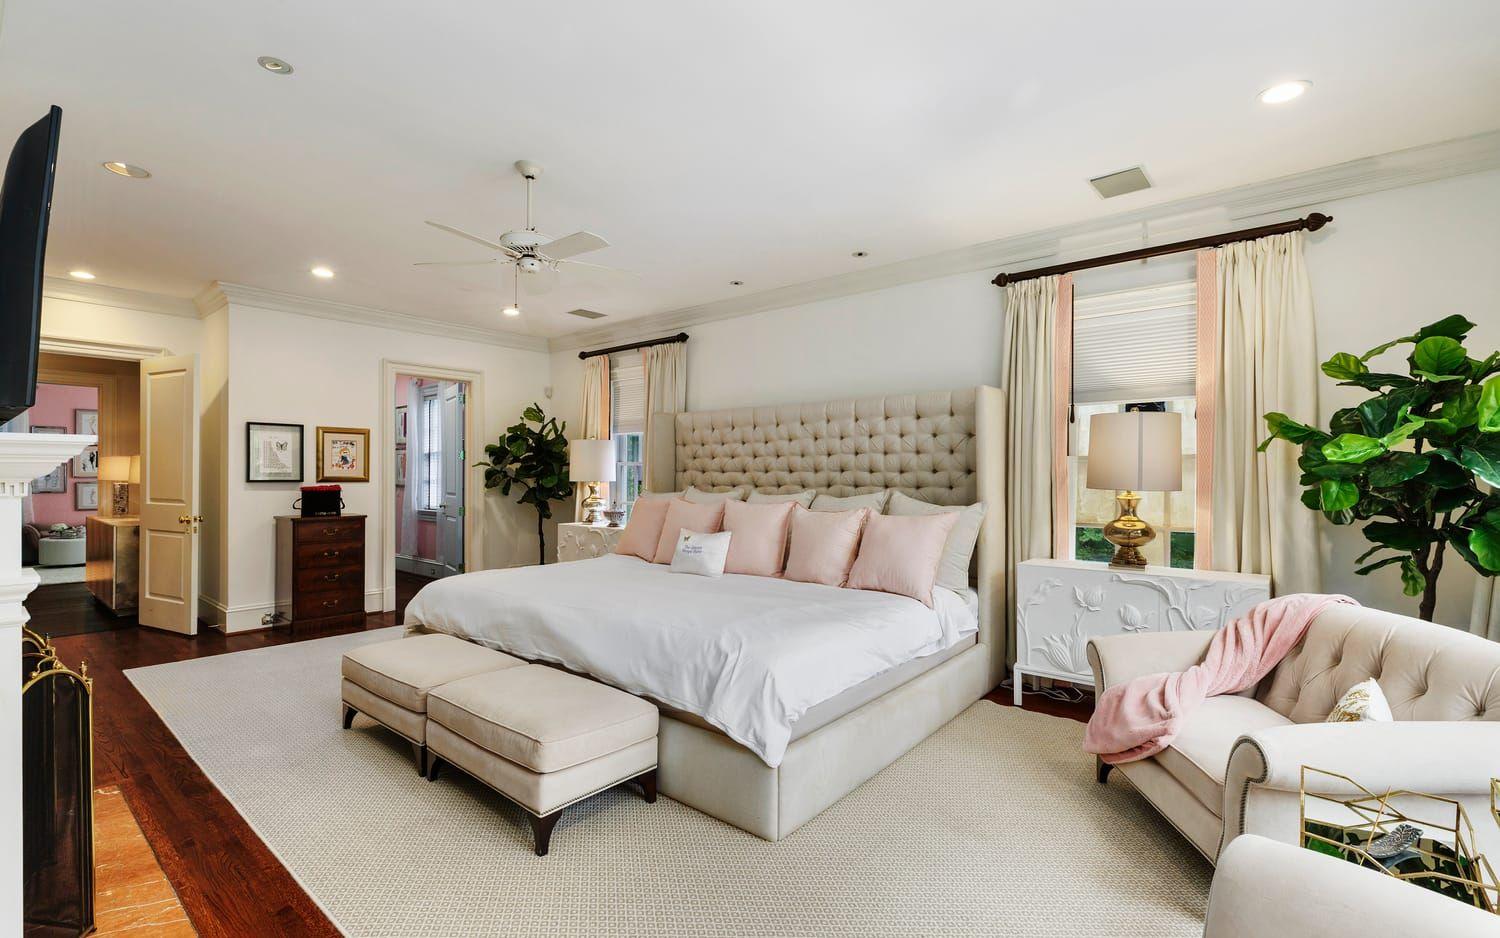 Mariahs sovrum är stort och ljust med öppen spis och har plats för ett par ordentliga fåtöljer.